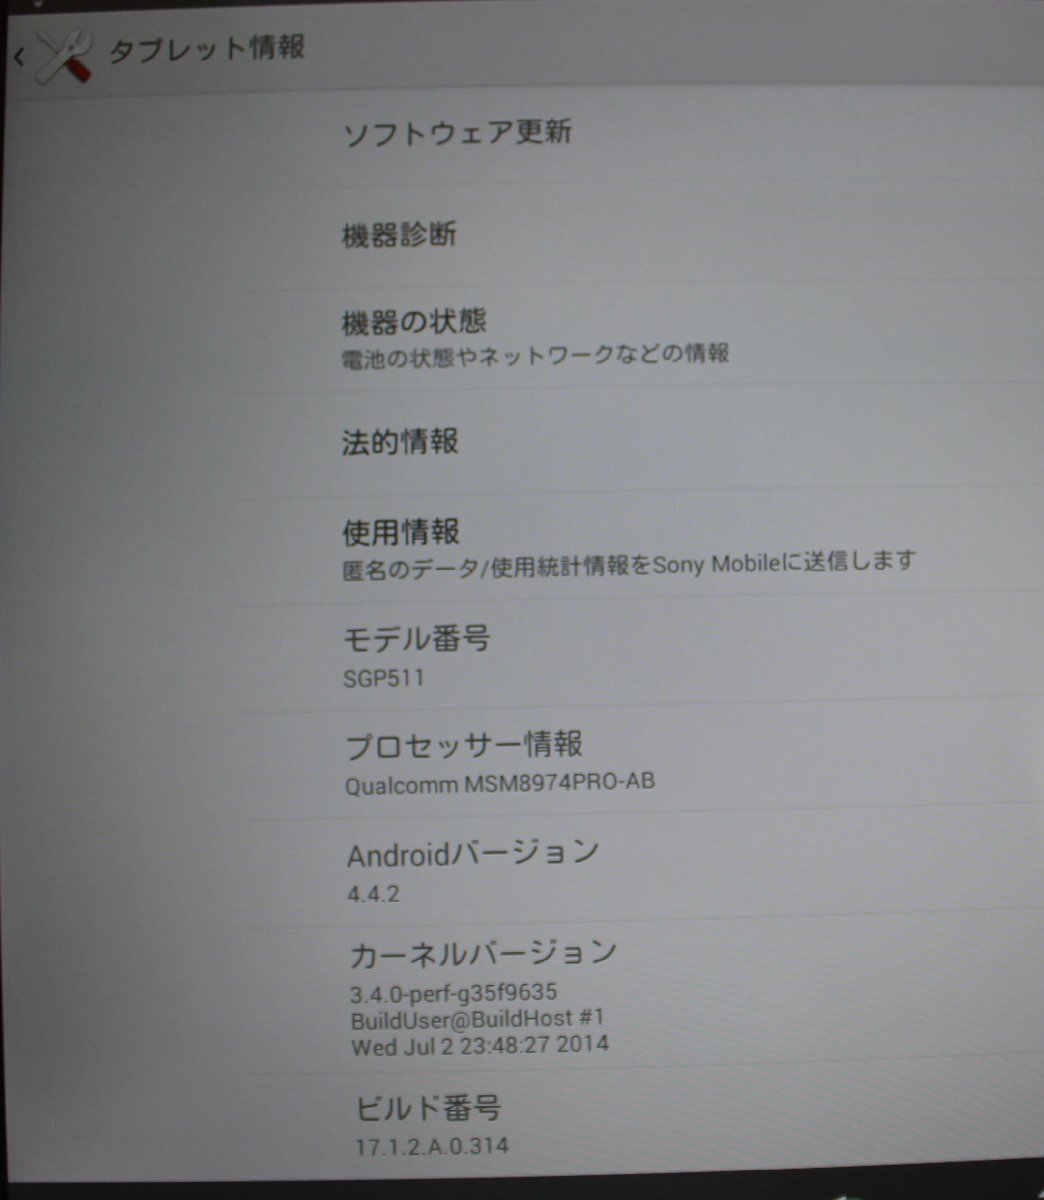 【大阪発】【SONY】Xperia Z2 Tablet /SGP511/バージョン4.4.2 【 1台 】☆ J:COM仕様 ☆動作確認済み☆ (6269)_画像4